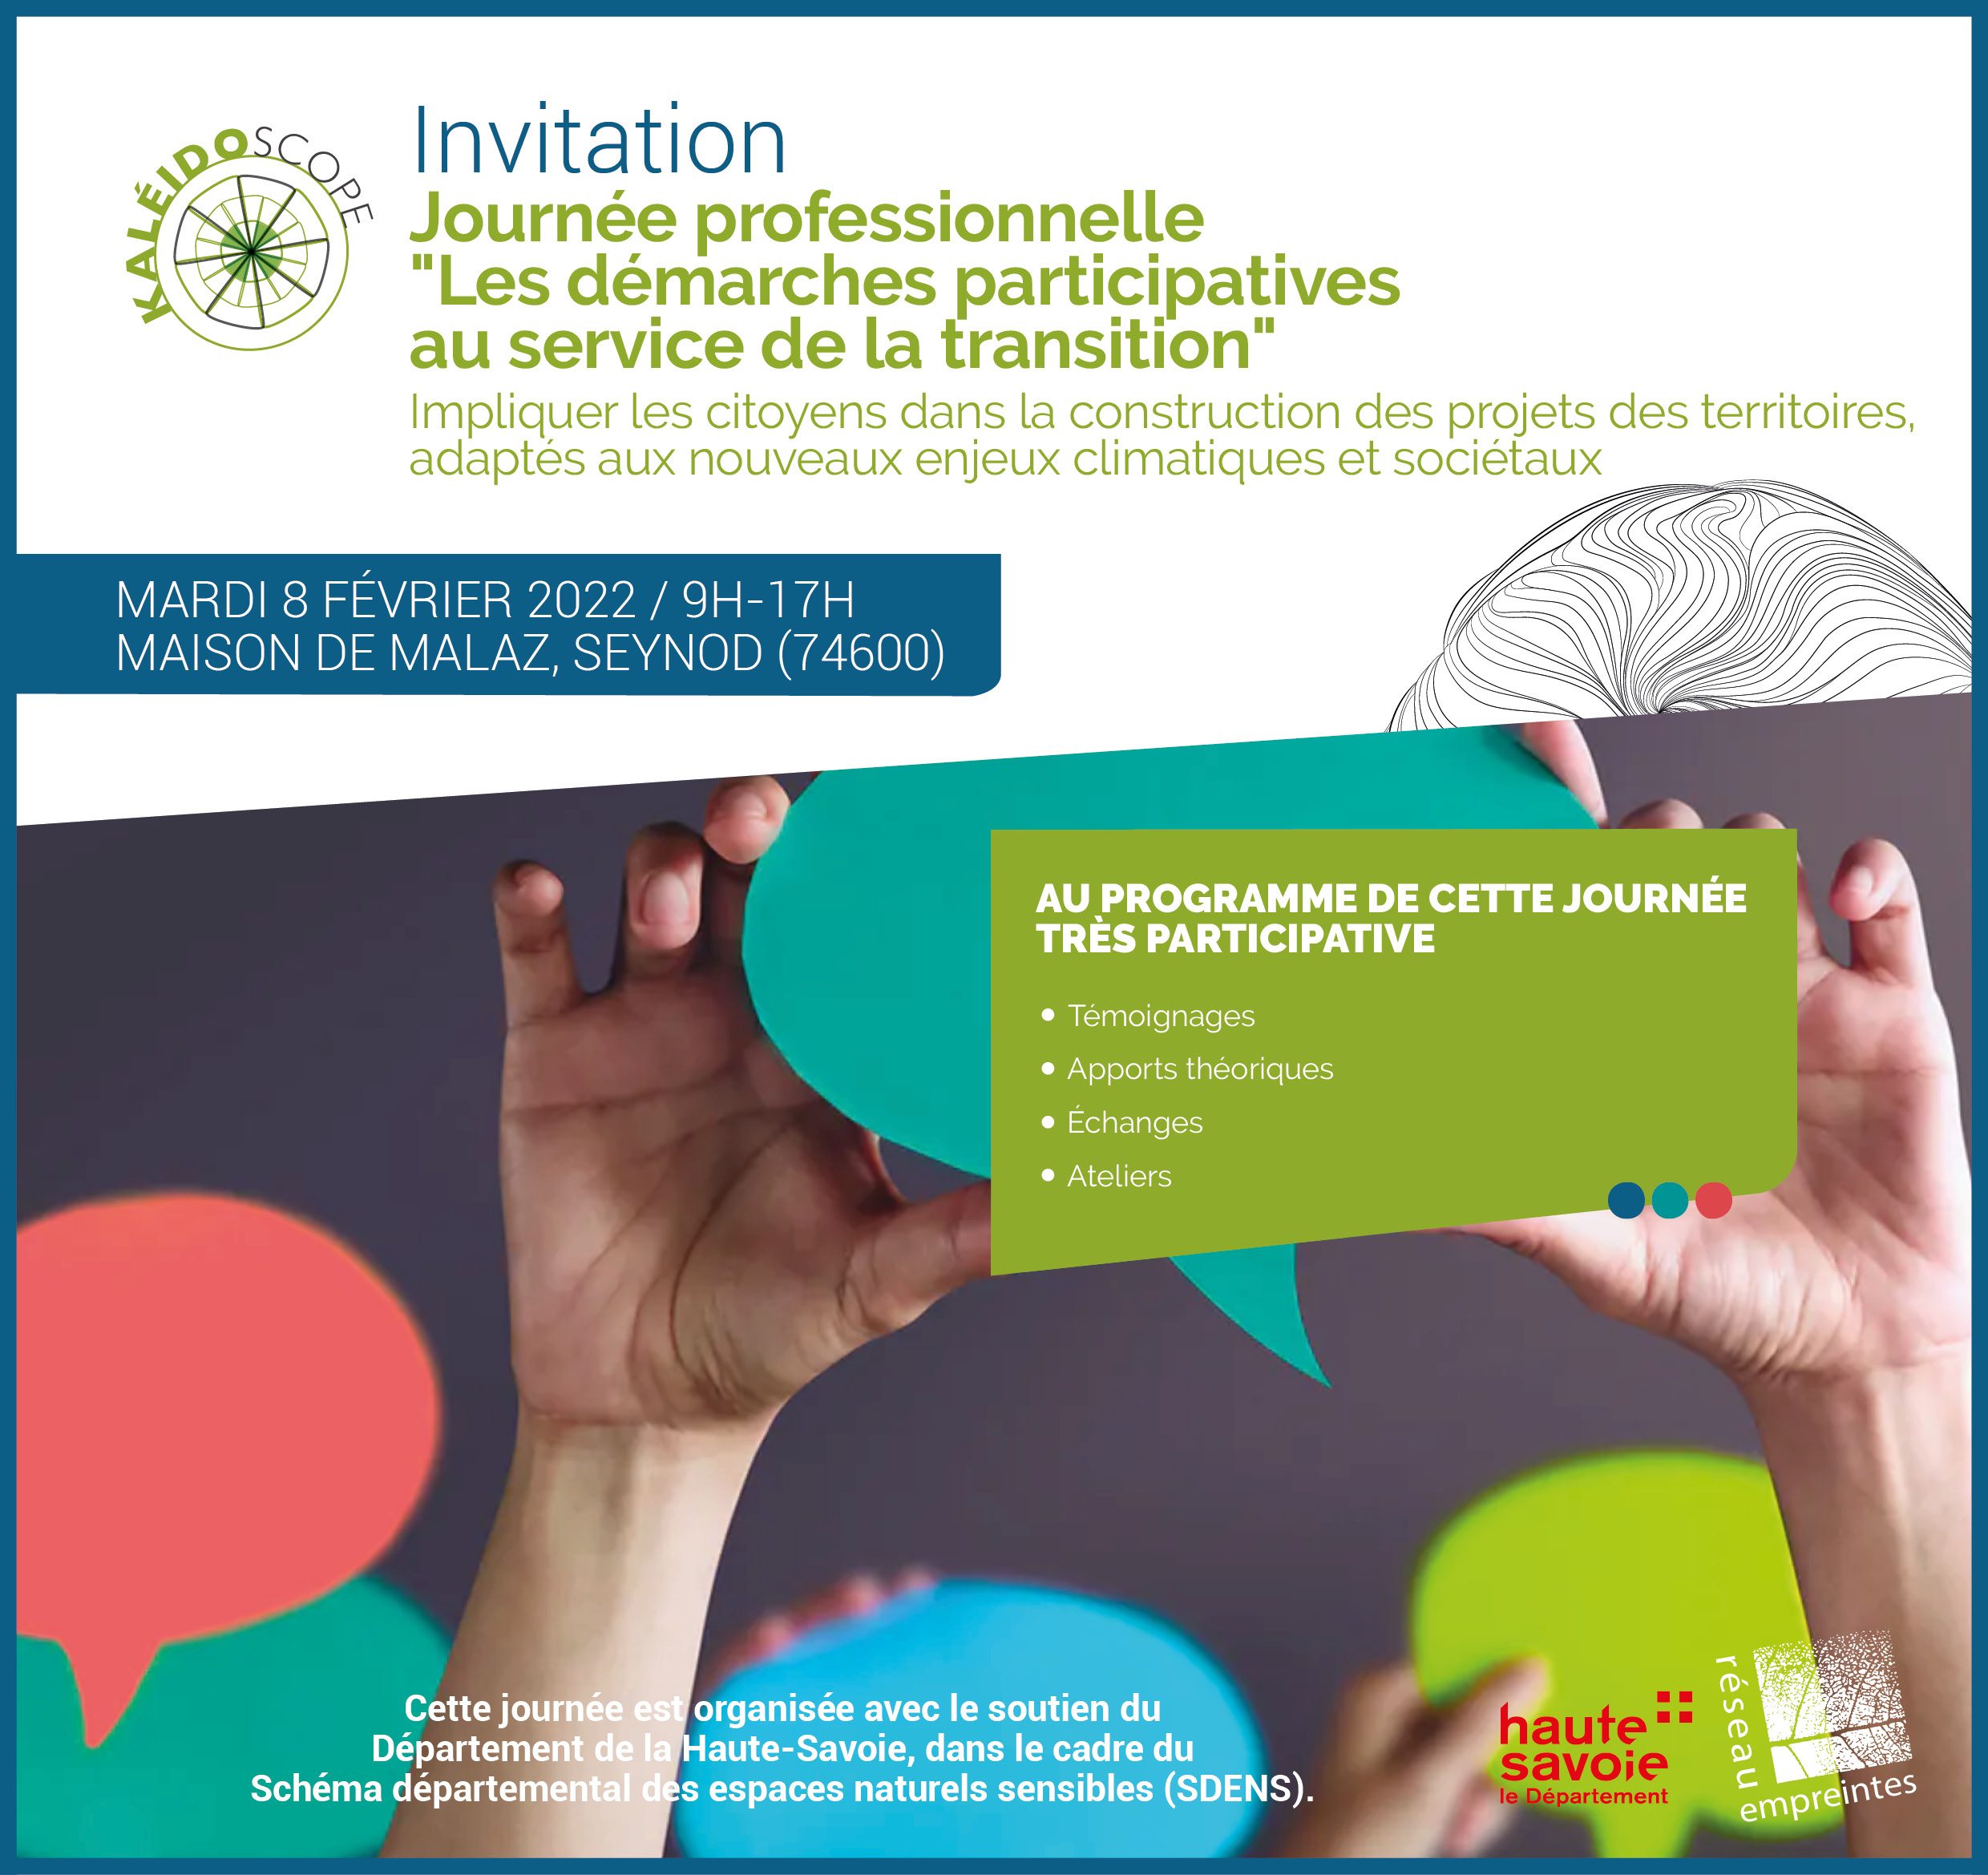 Journée professionnelle "Les démarches participatives au service de la transition" 